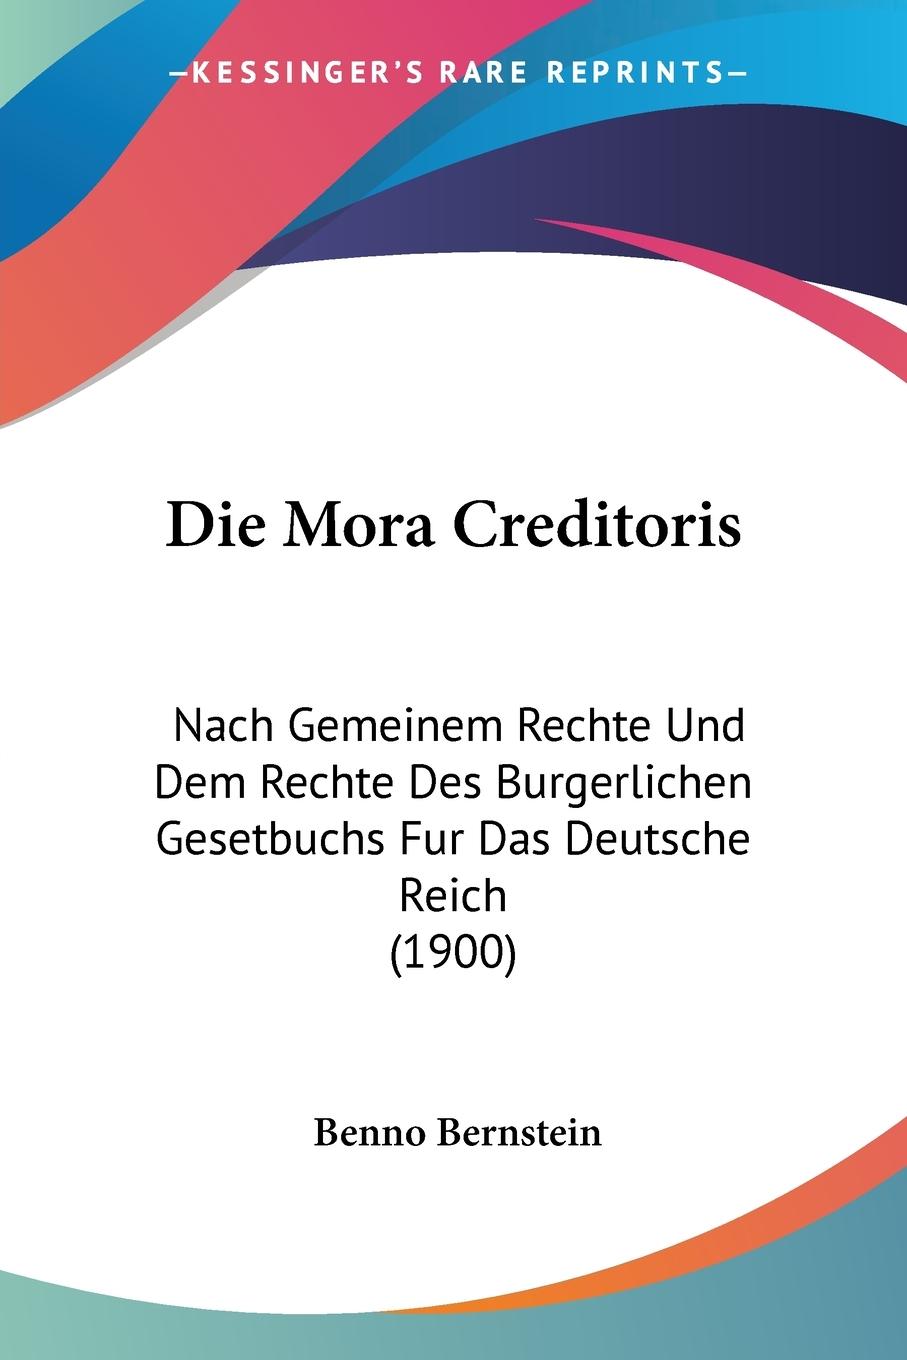 Die Mora Creditoris - Bernstein, Benno